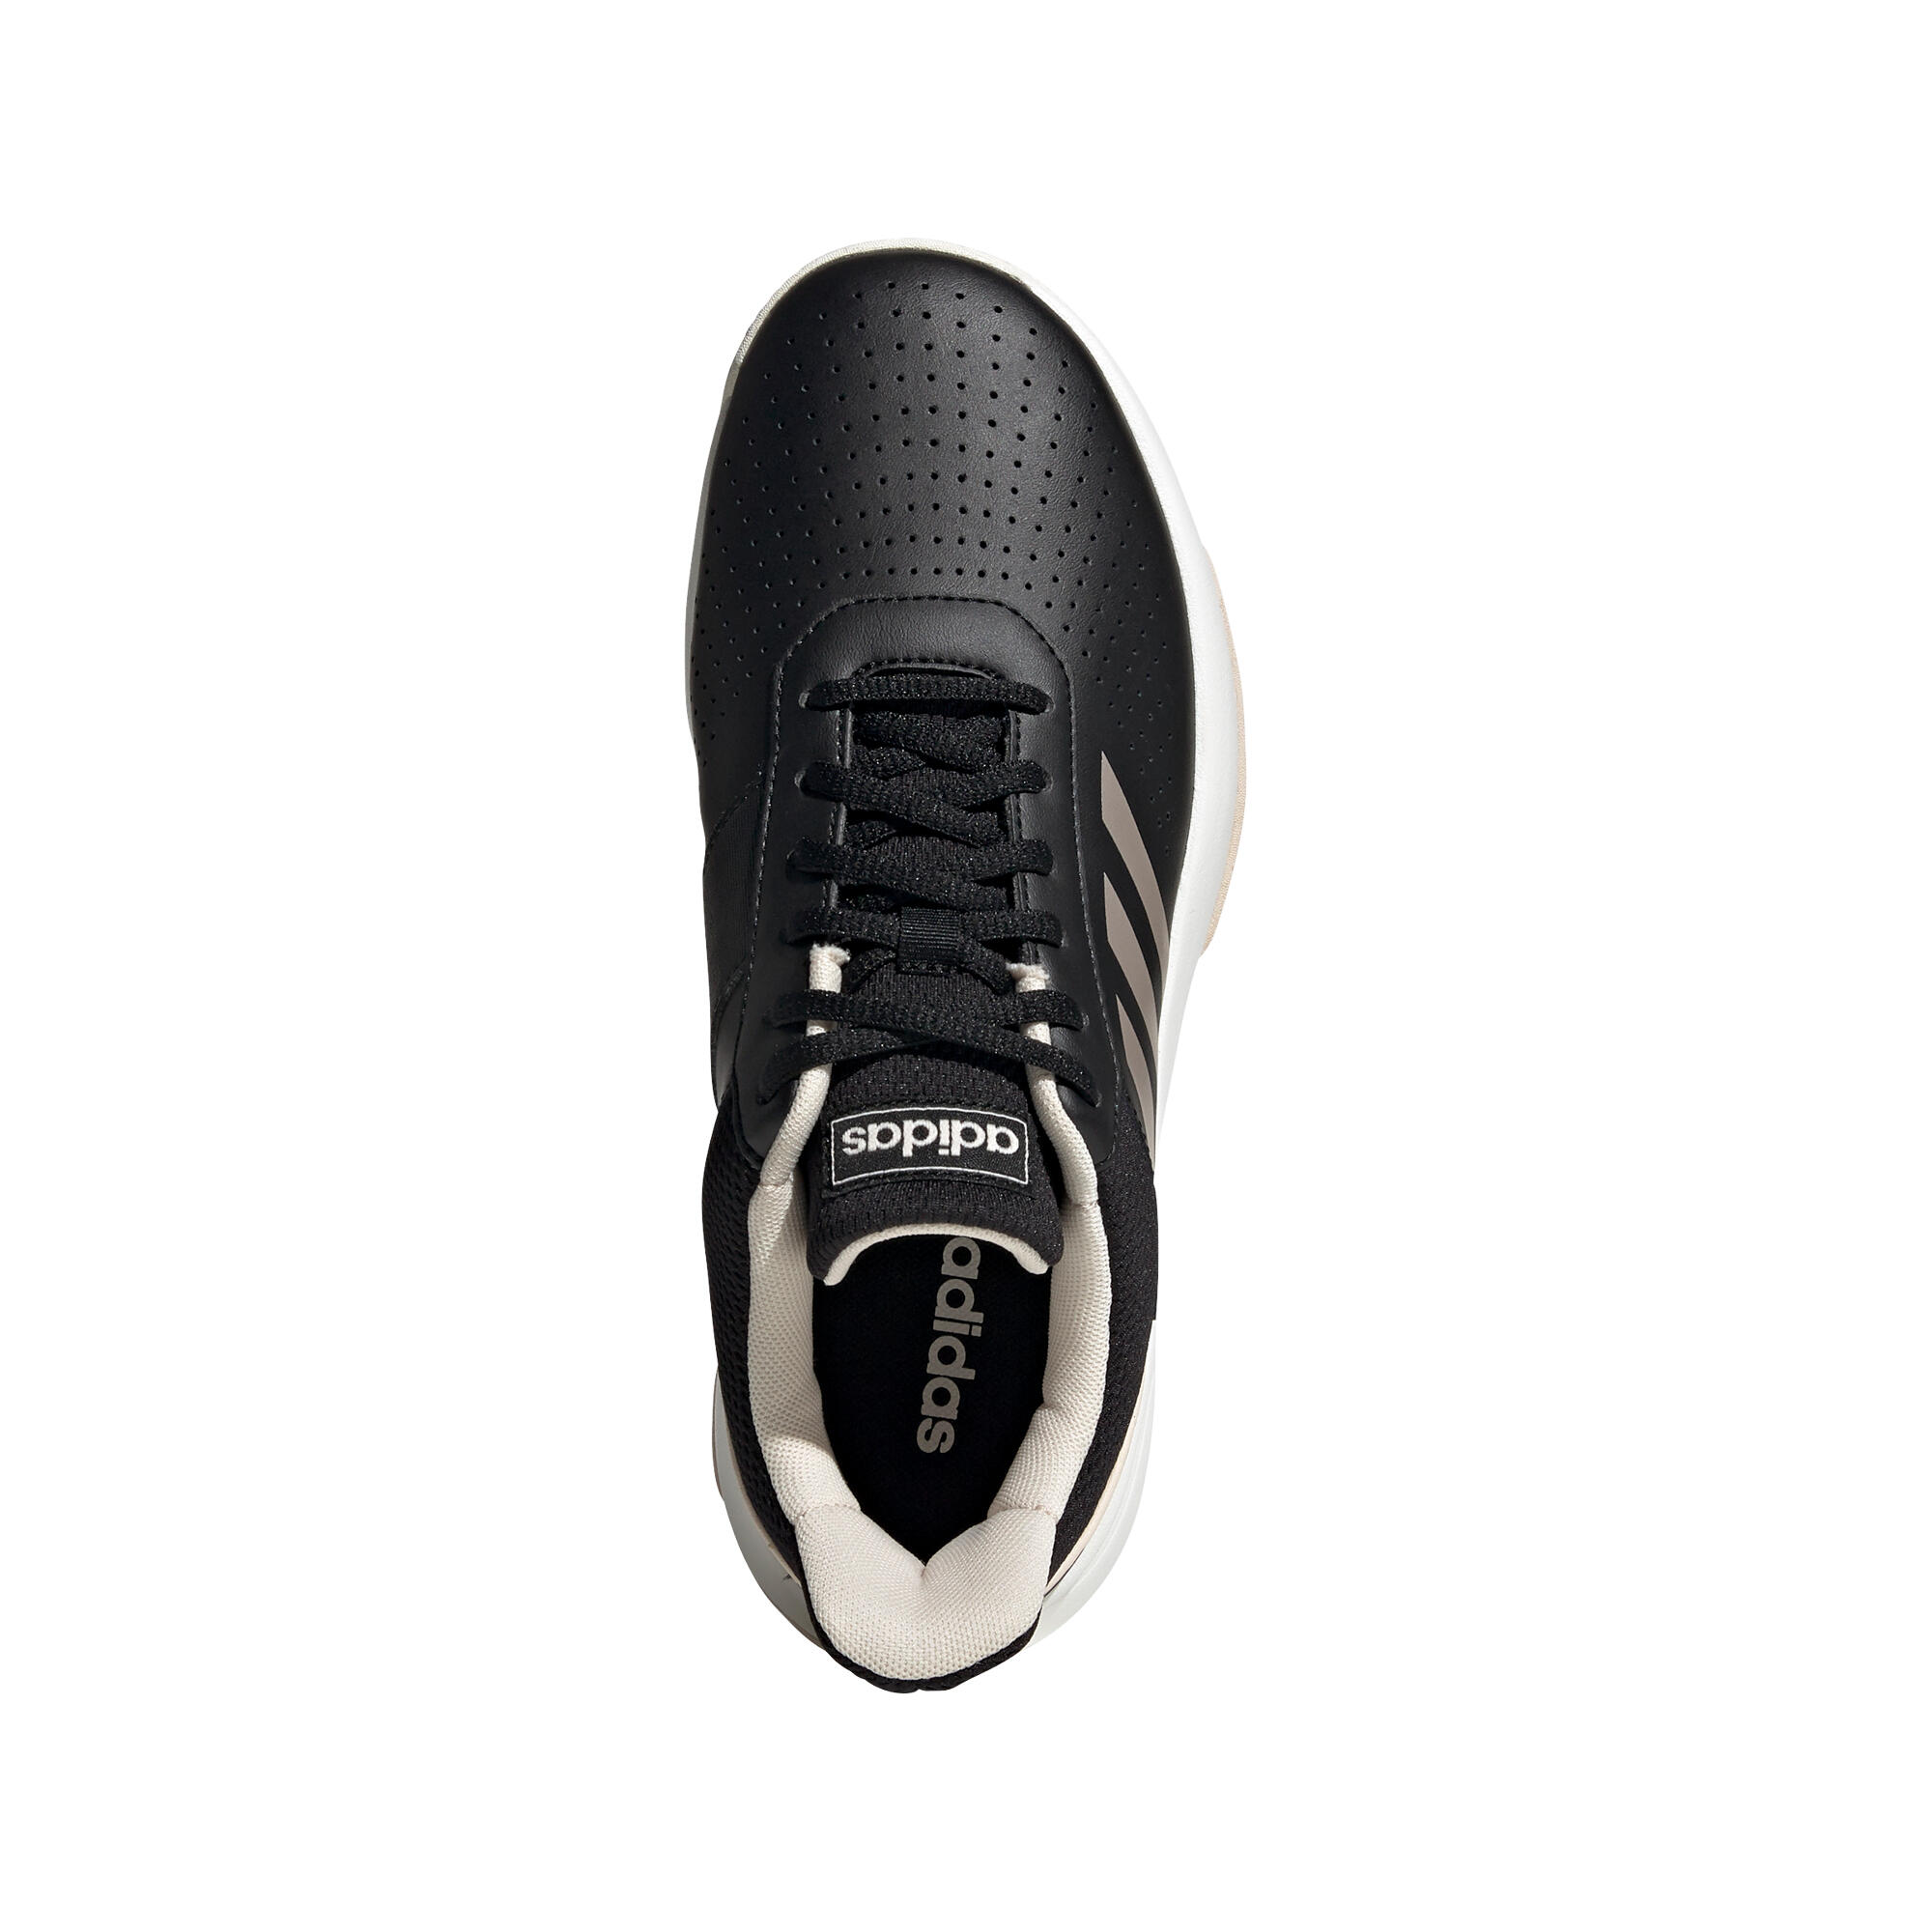 Women's Tennis Shoes Courtsmash - Black 5/10